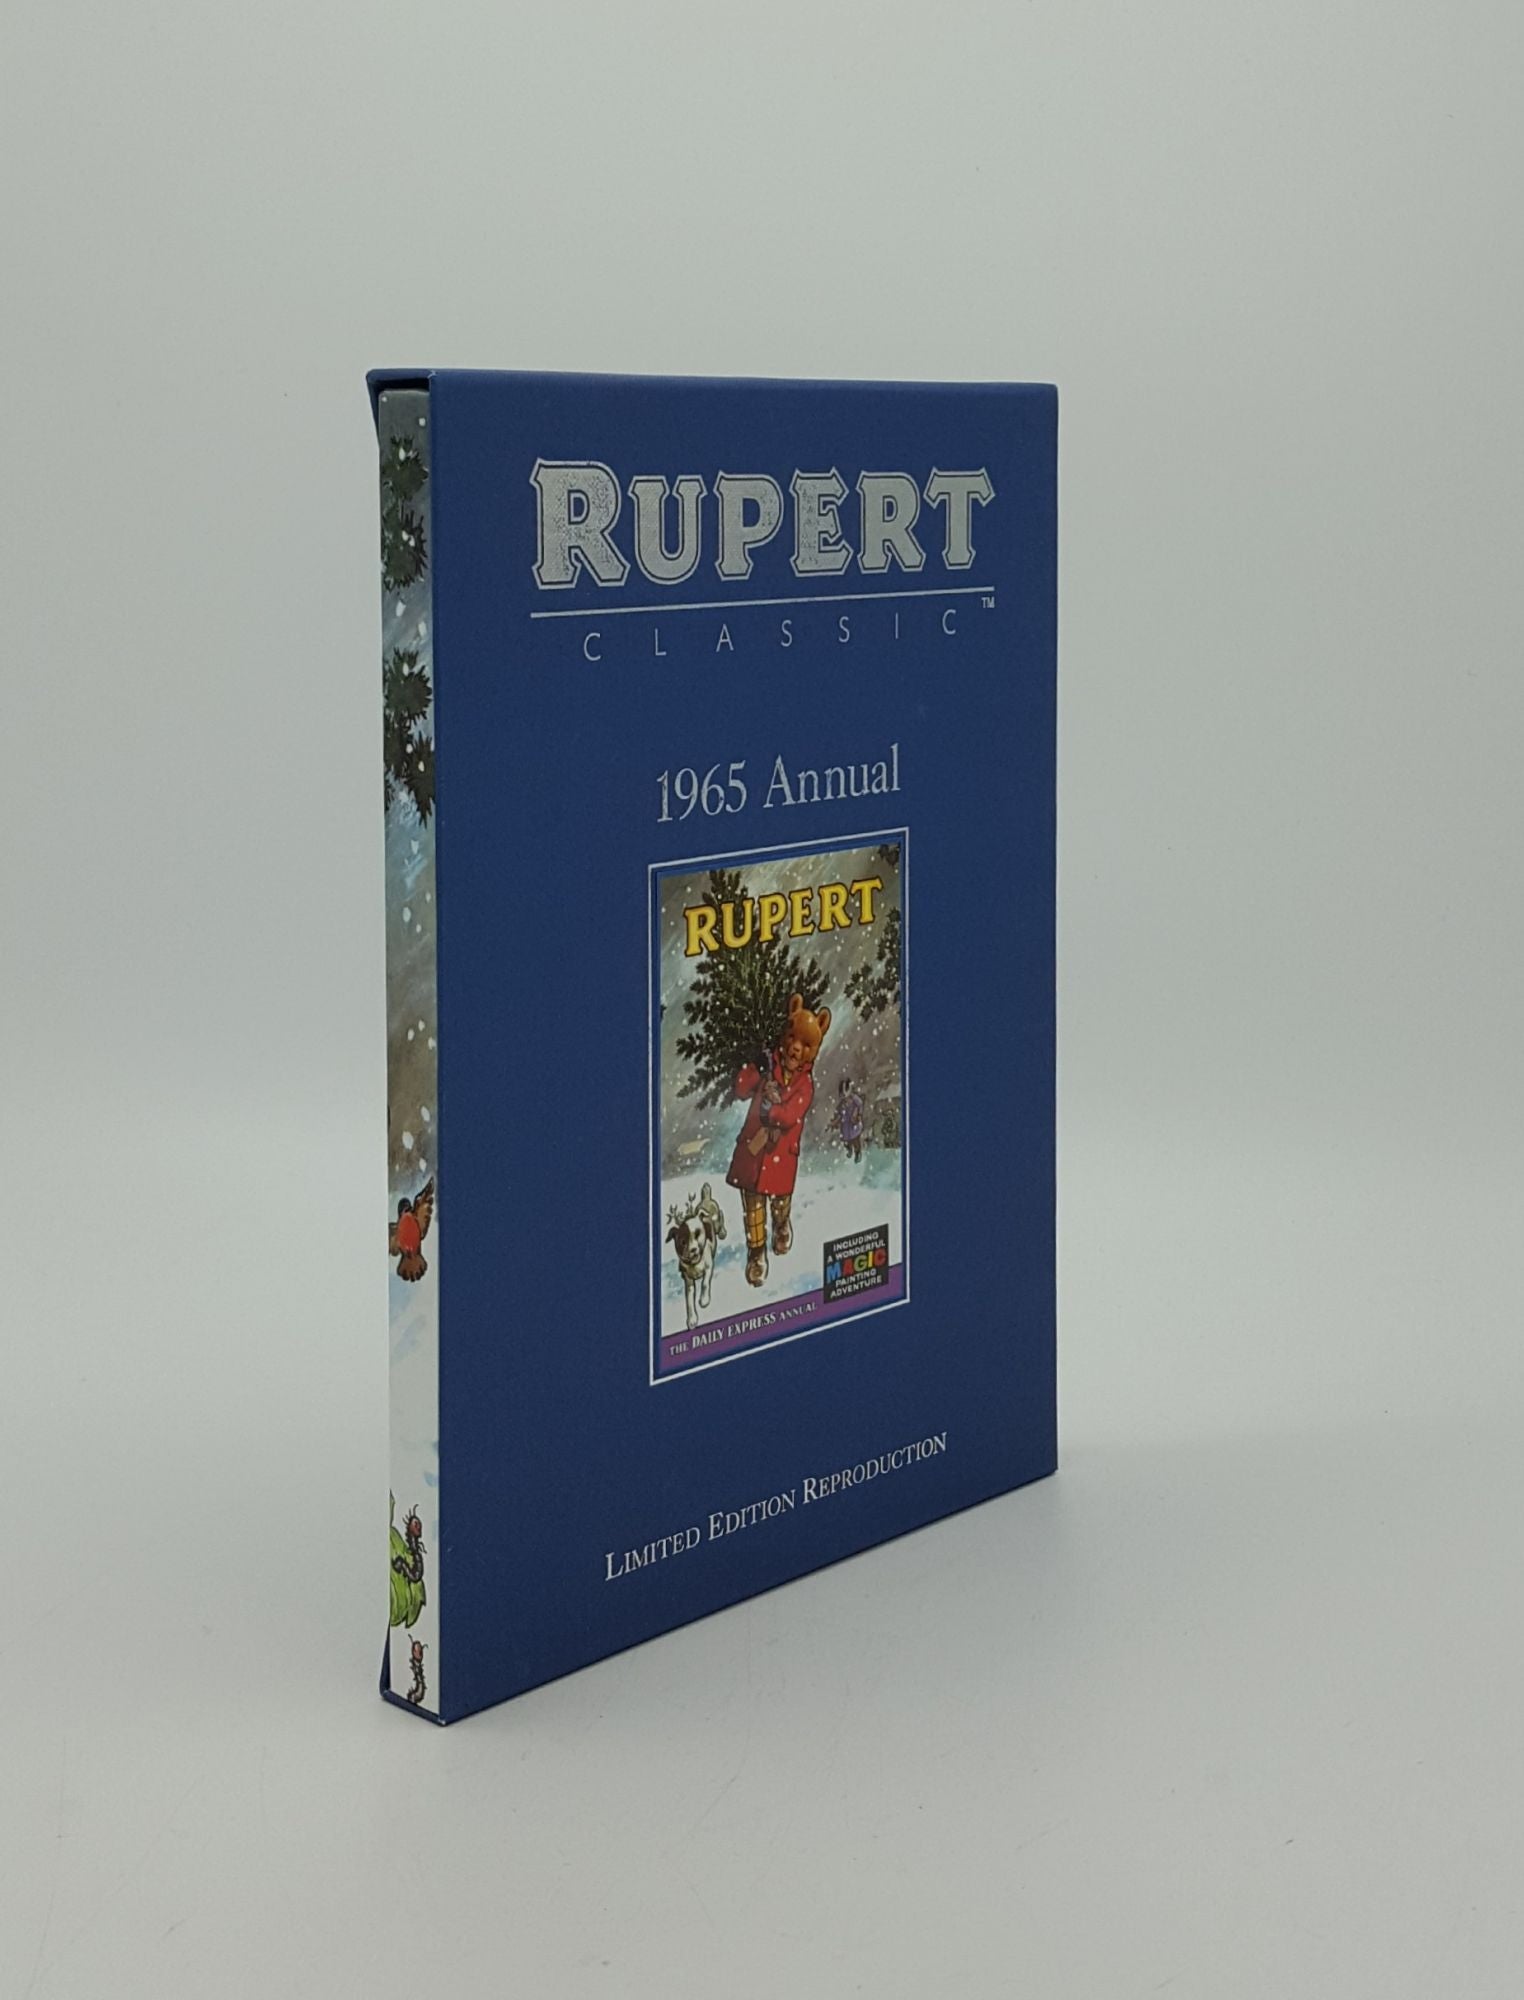 BESTALL Alfred - Rupert 1965 Annual